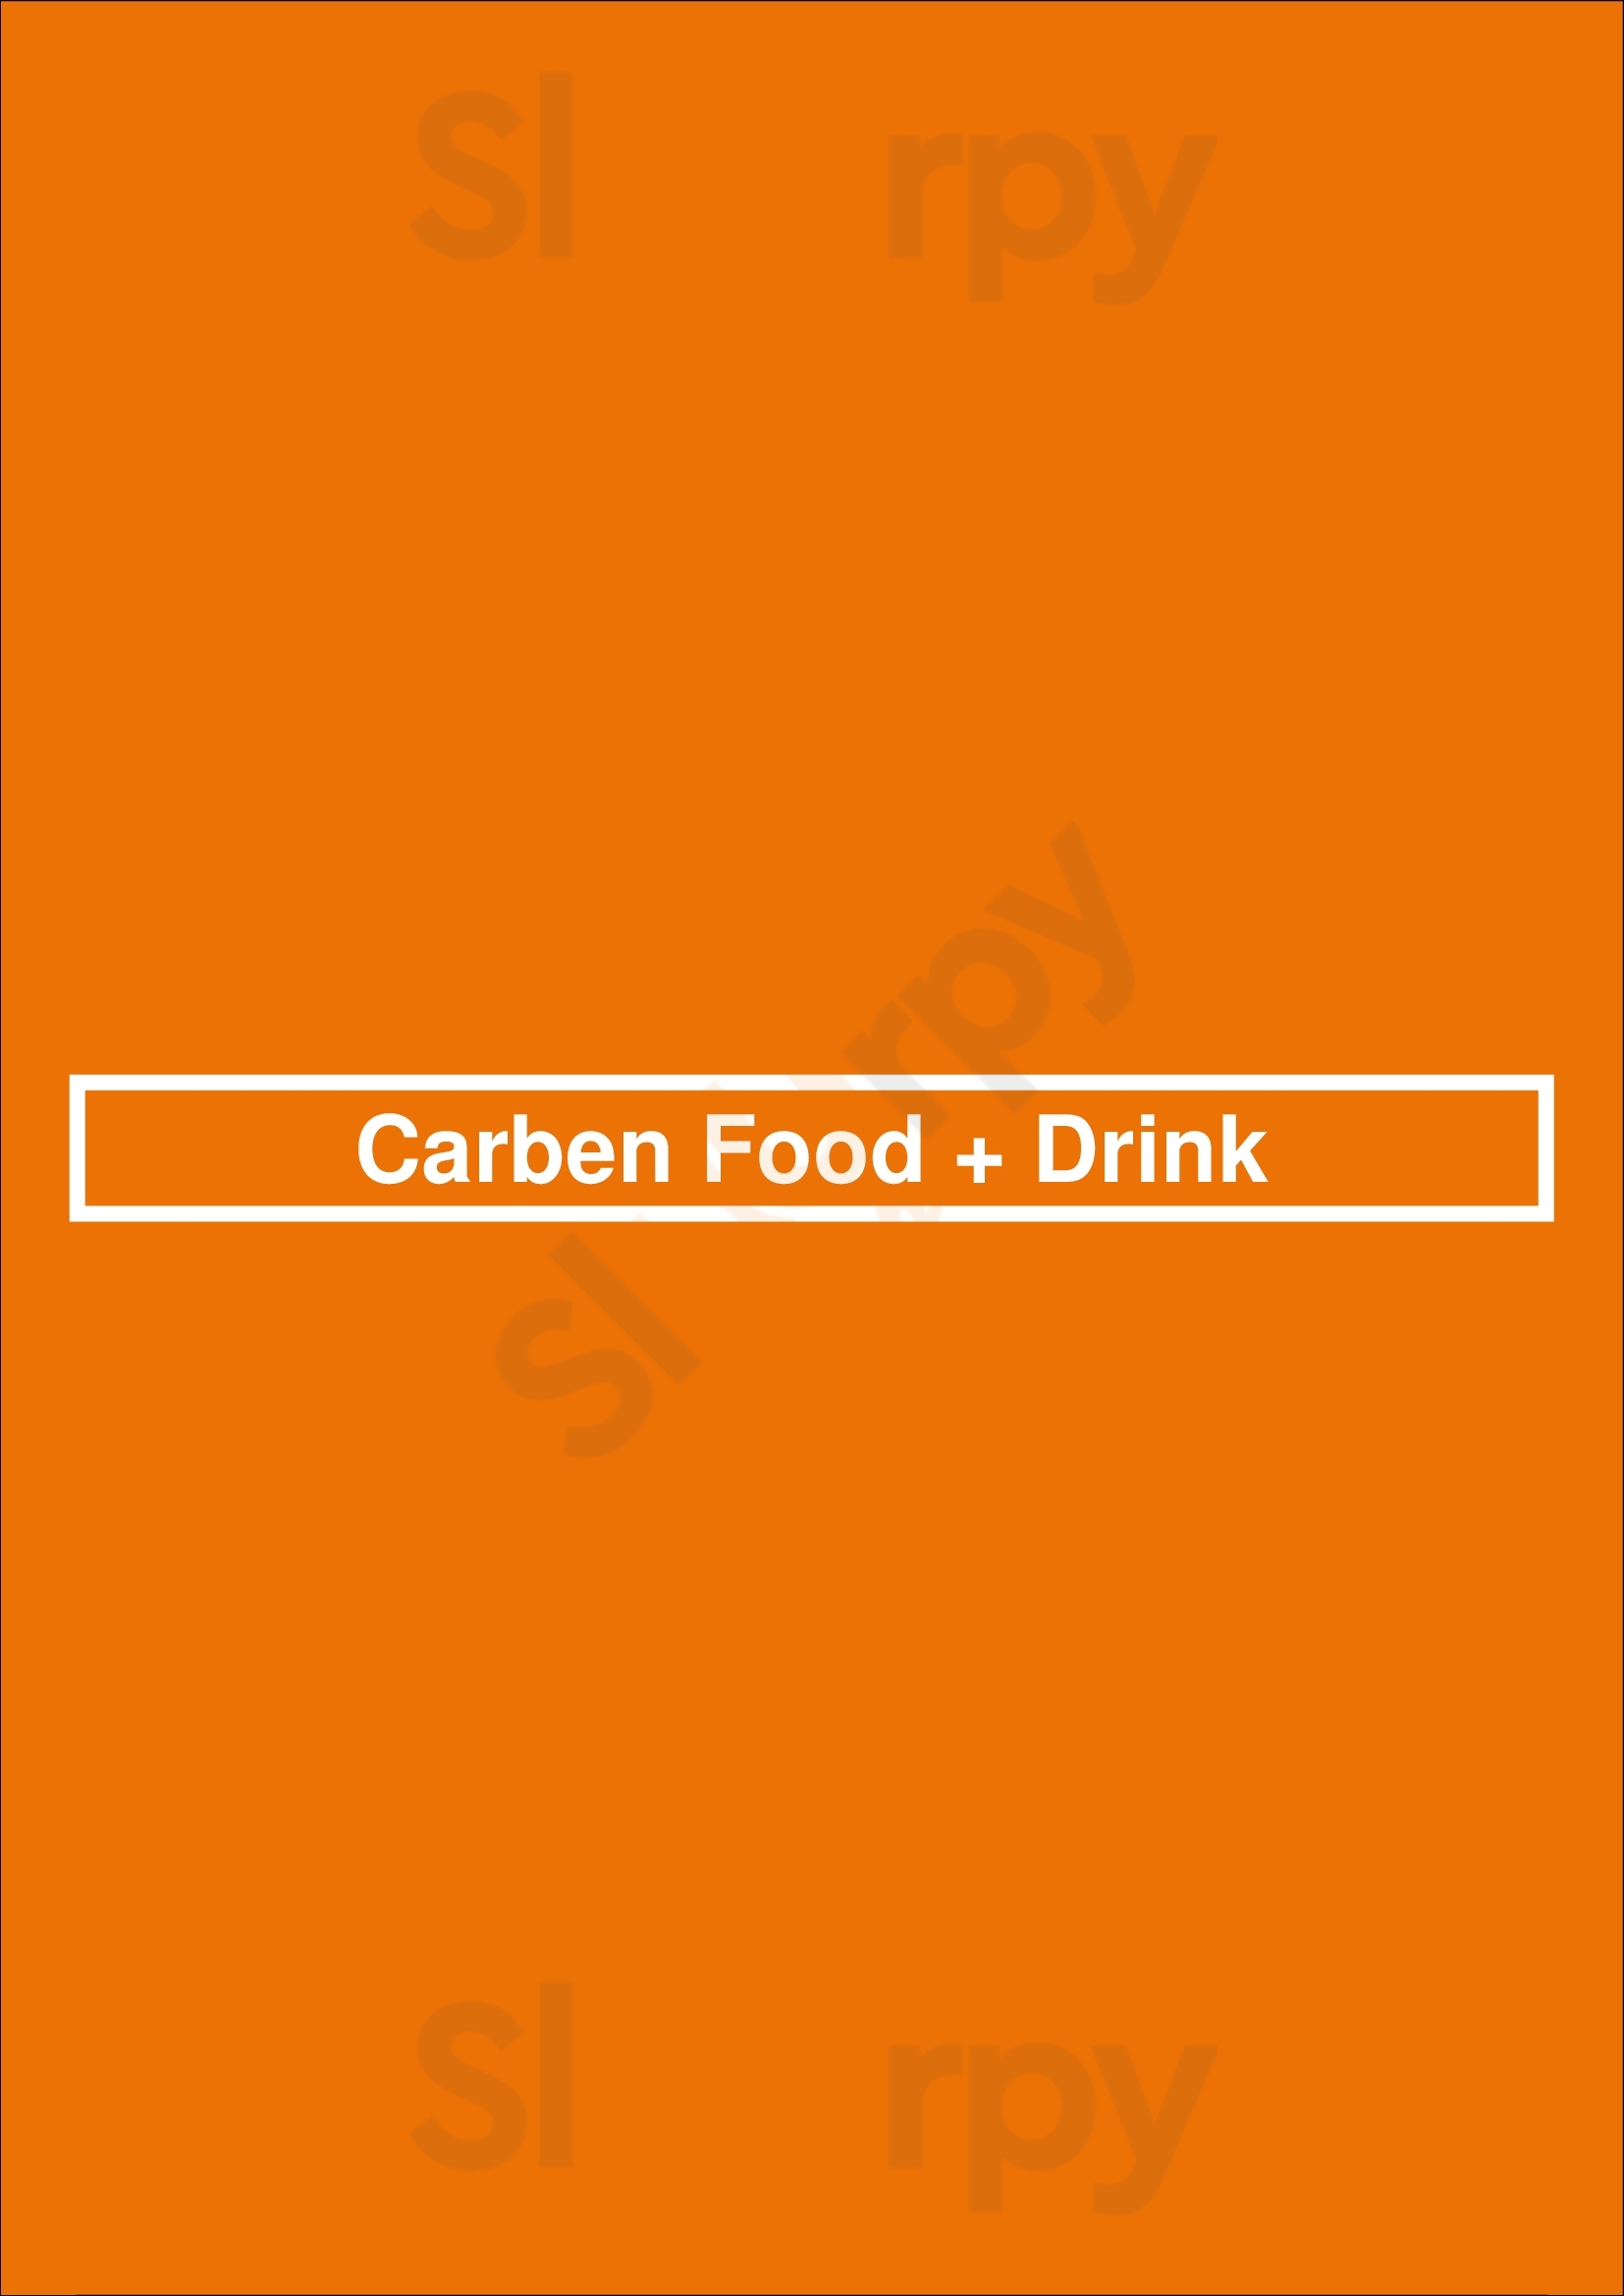 Carben Food + Drink Ottawa Menu - 1